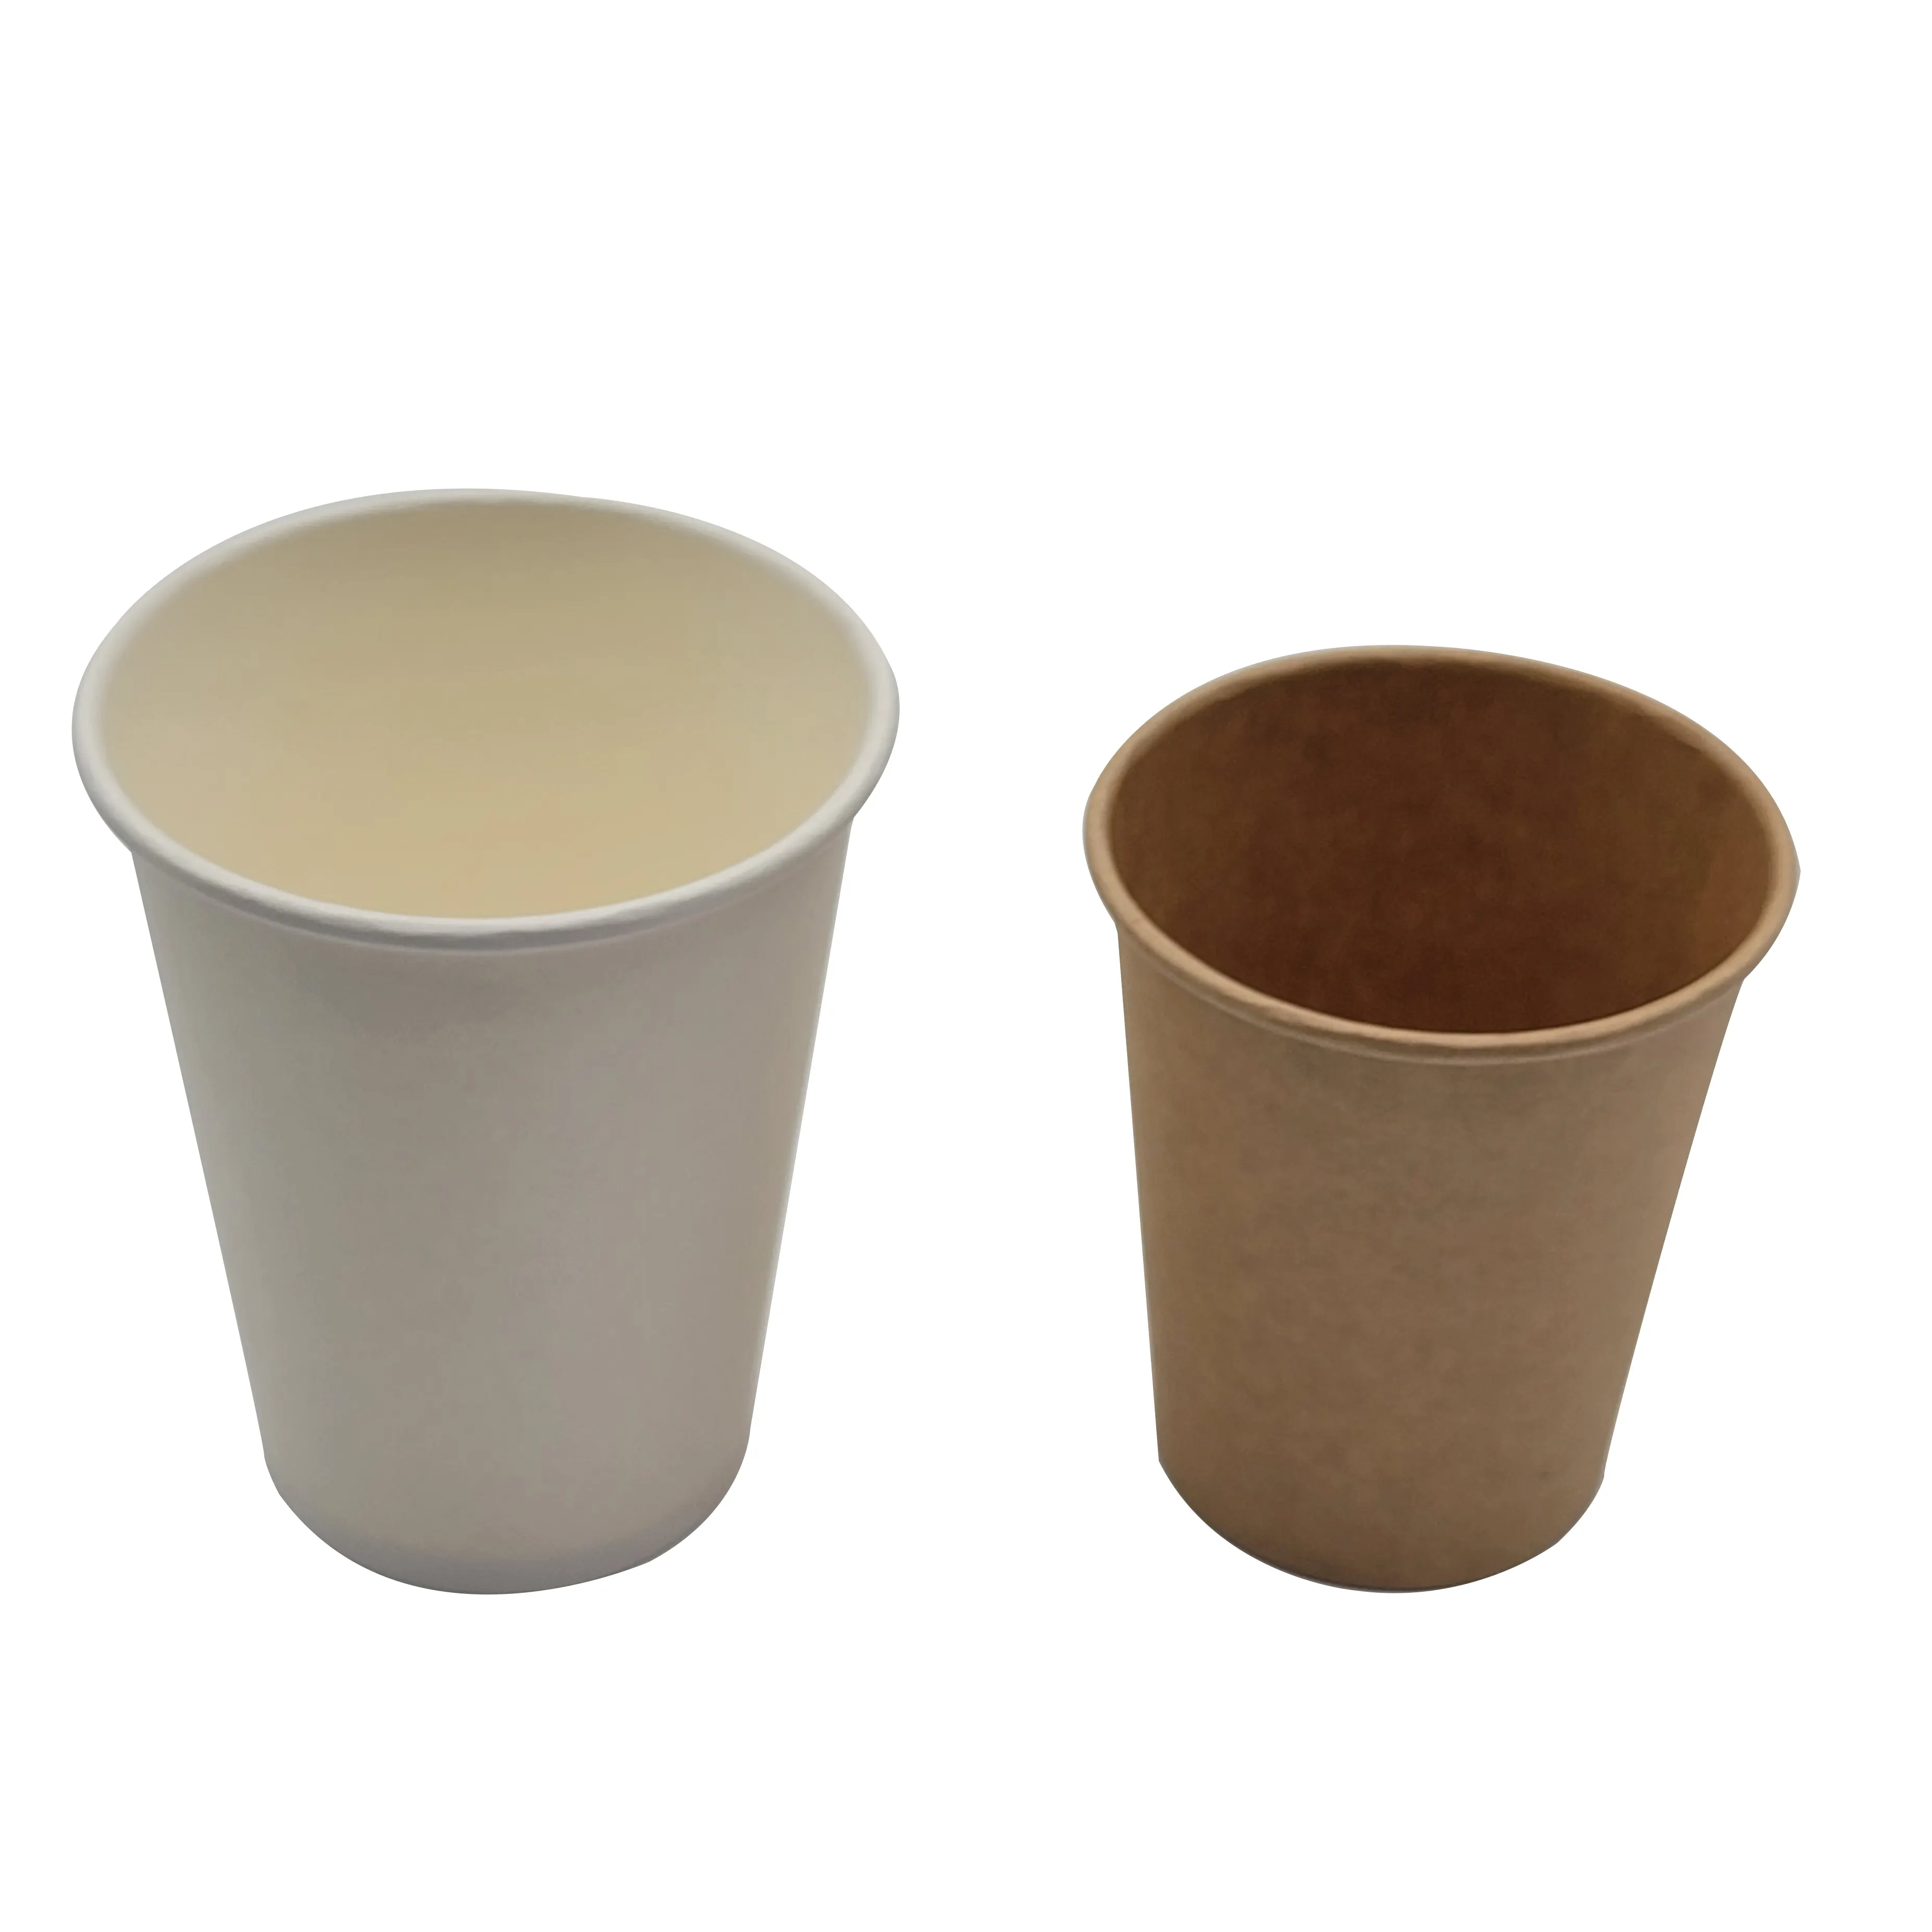 12 oz karton çift duvar biyolojik olarak parçalanabilir tek kullanımlık cafe kahve kağıt bardak